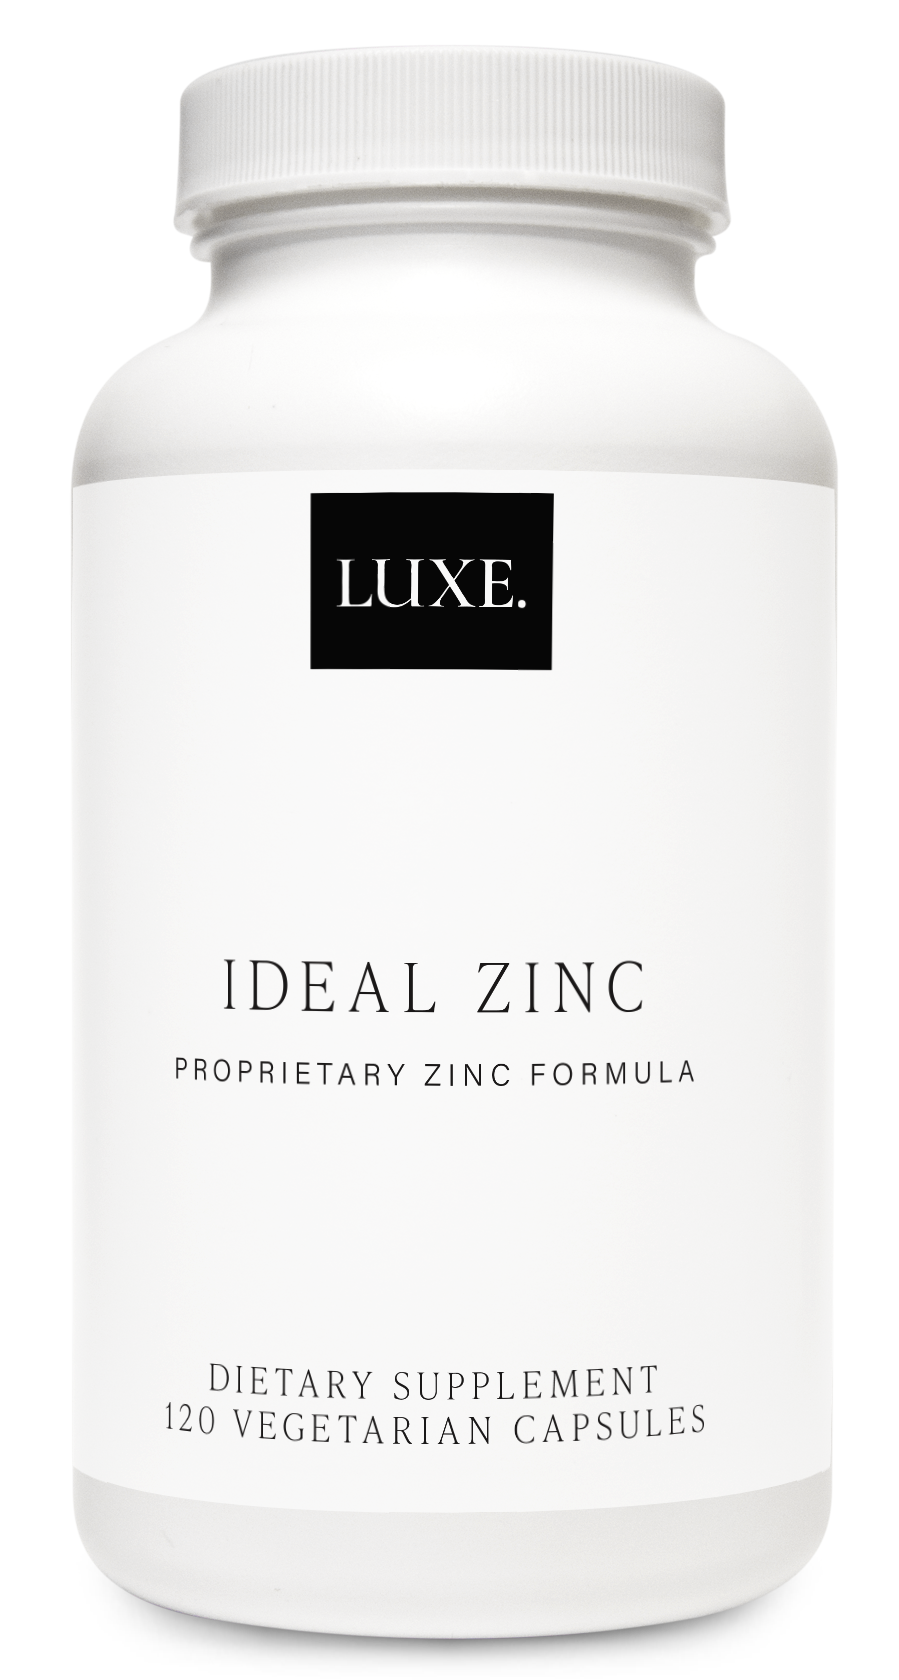 LUXE., Ideal Zinc